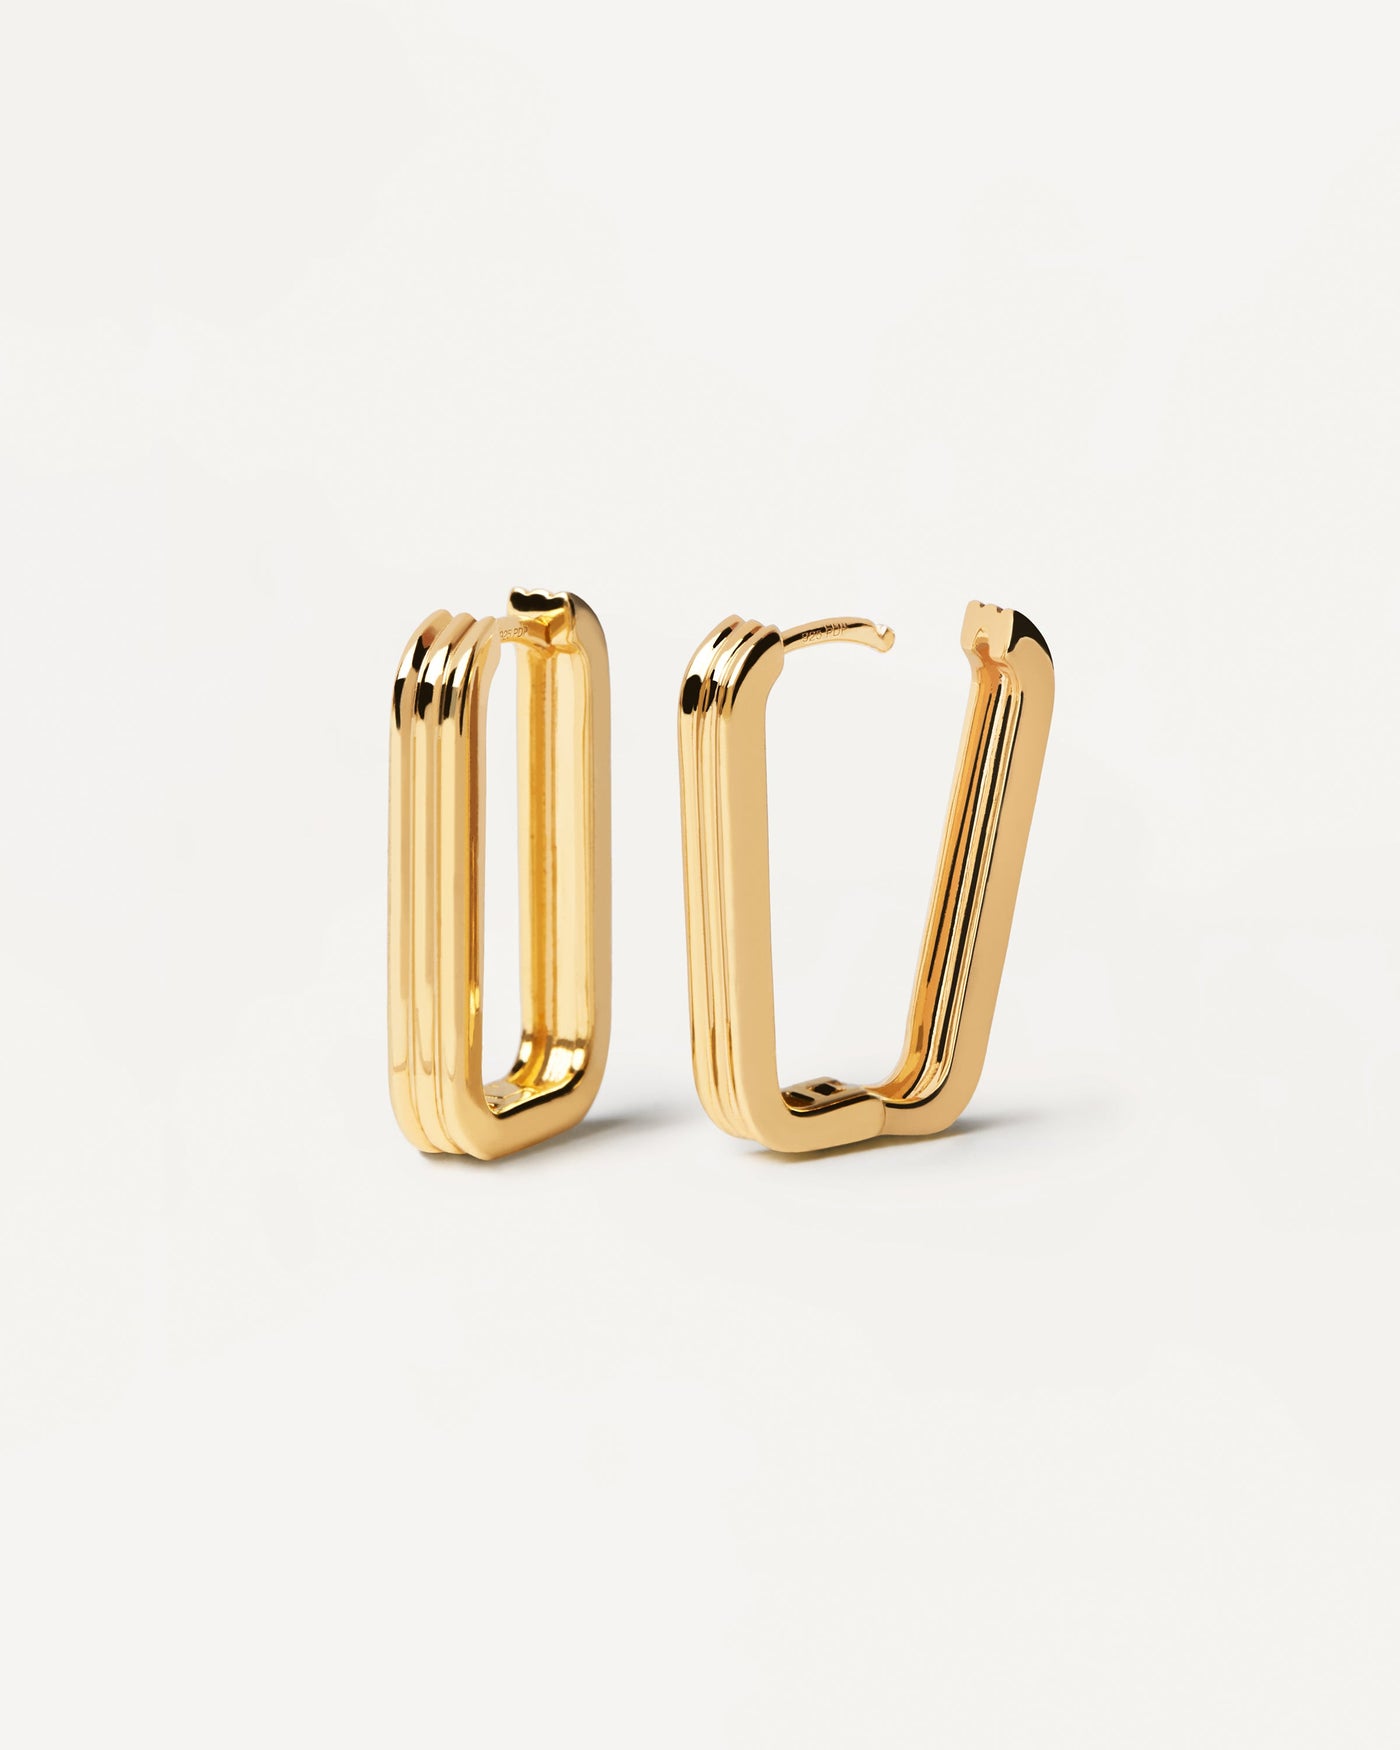 Super Nova Ohrringe. Squiptedische Reifen in goldplattiertem Silber mit 3 Bändern Design. Erhalten Sie die neuesten Produkte von PDPAOLA. Geben Sie Ihre Bestellung sicher auf und erhalten Sie diesen Bestseller.